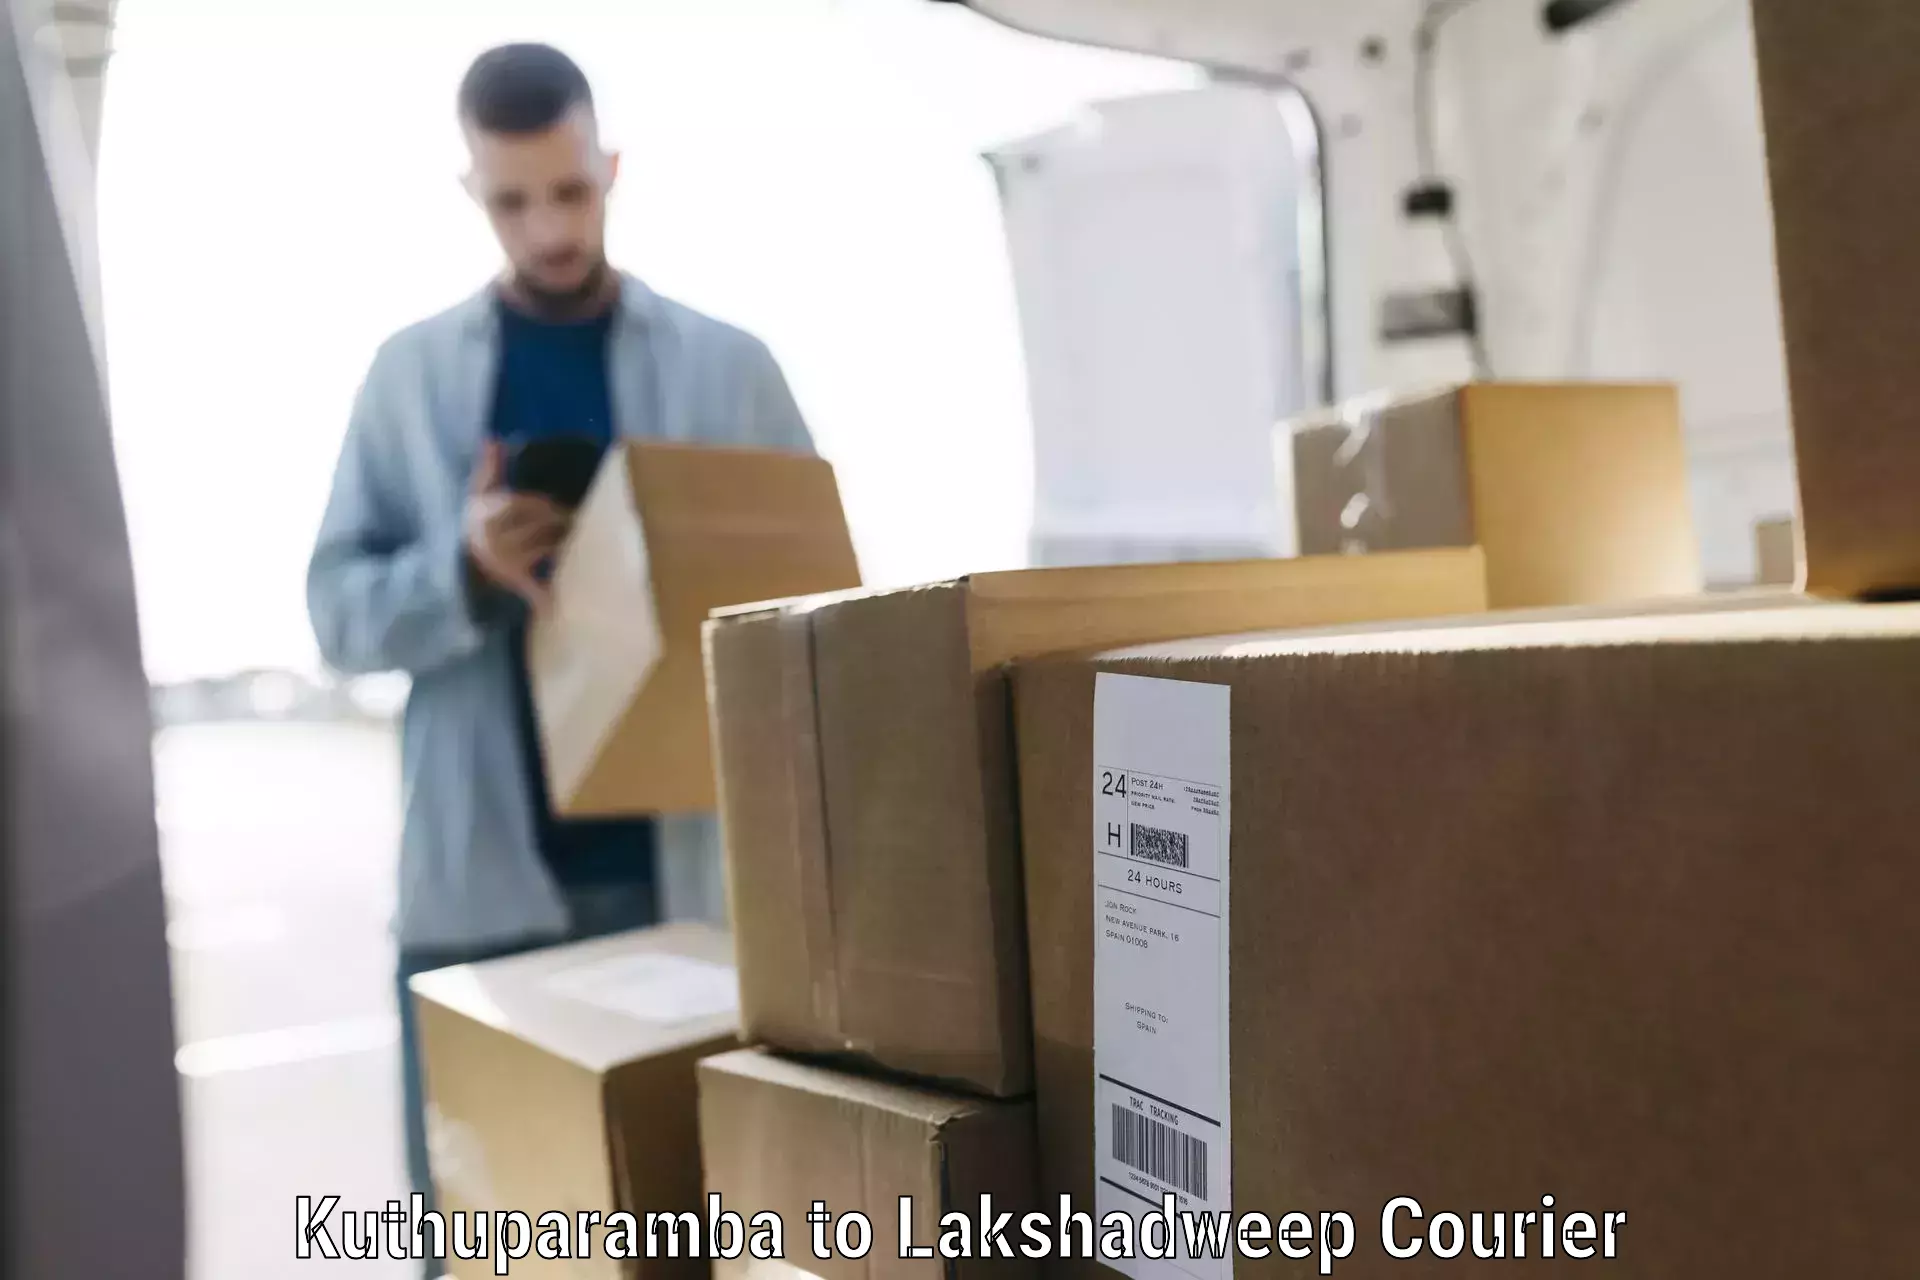 Luggage delivery system Kuthuparamba to Lakshadweep